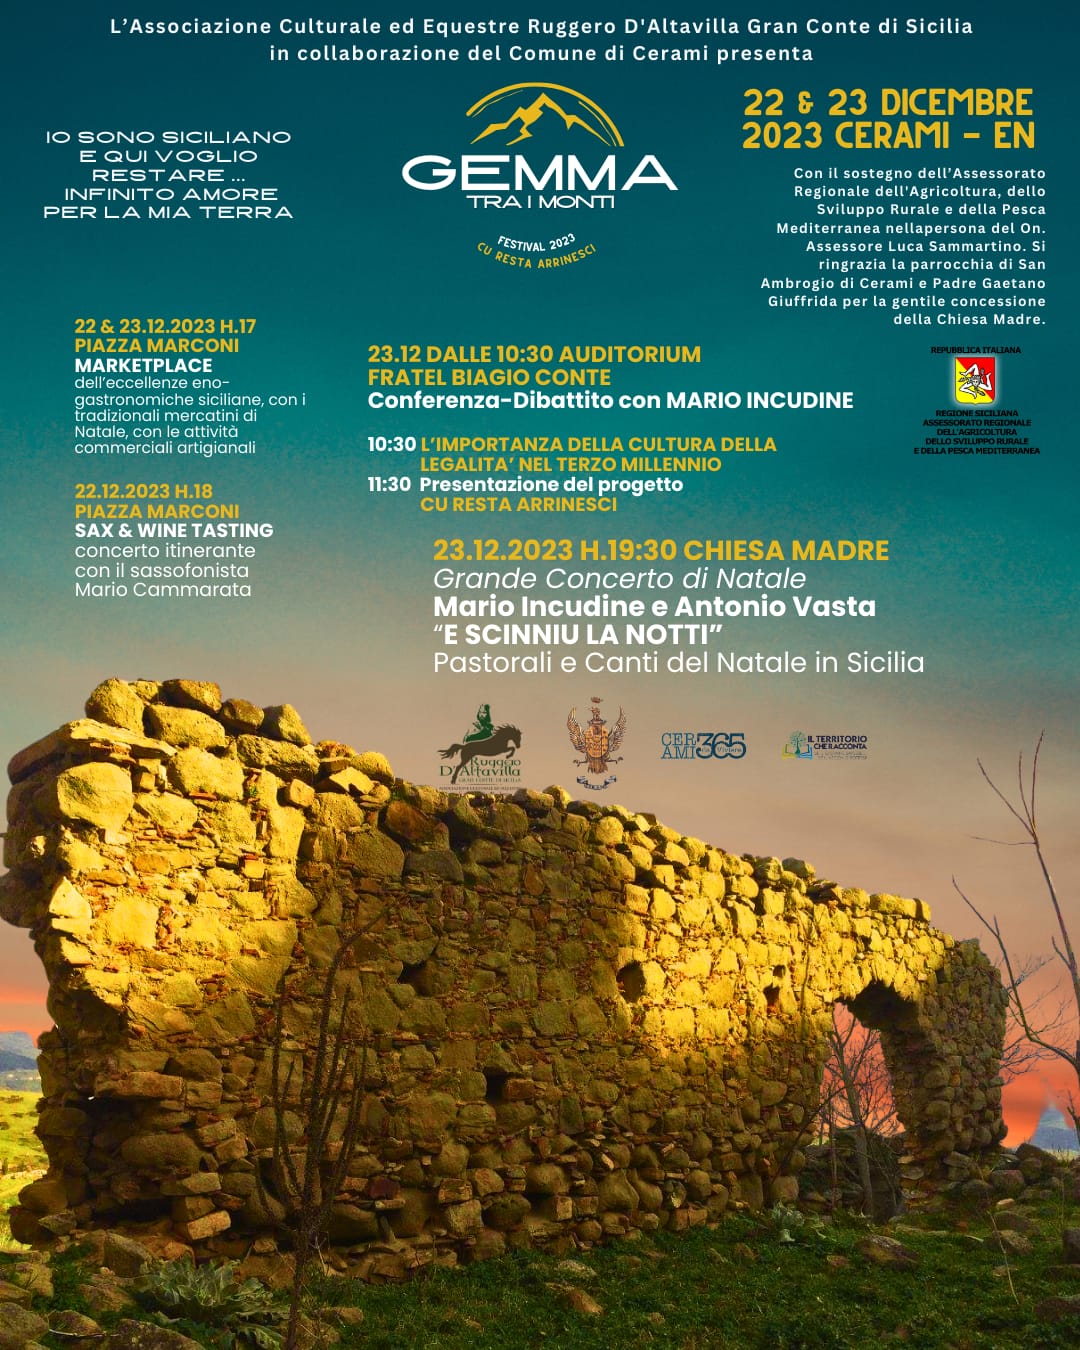 Gemma tra i monti 2023: a Cerami, nell’ennese, un Festival per la rinascita delle comunità montane